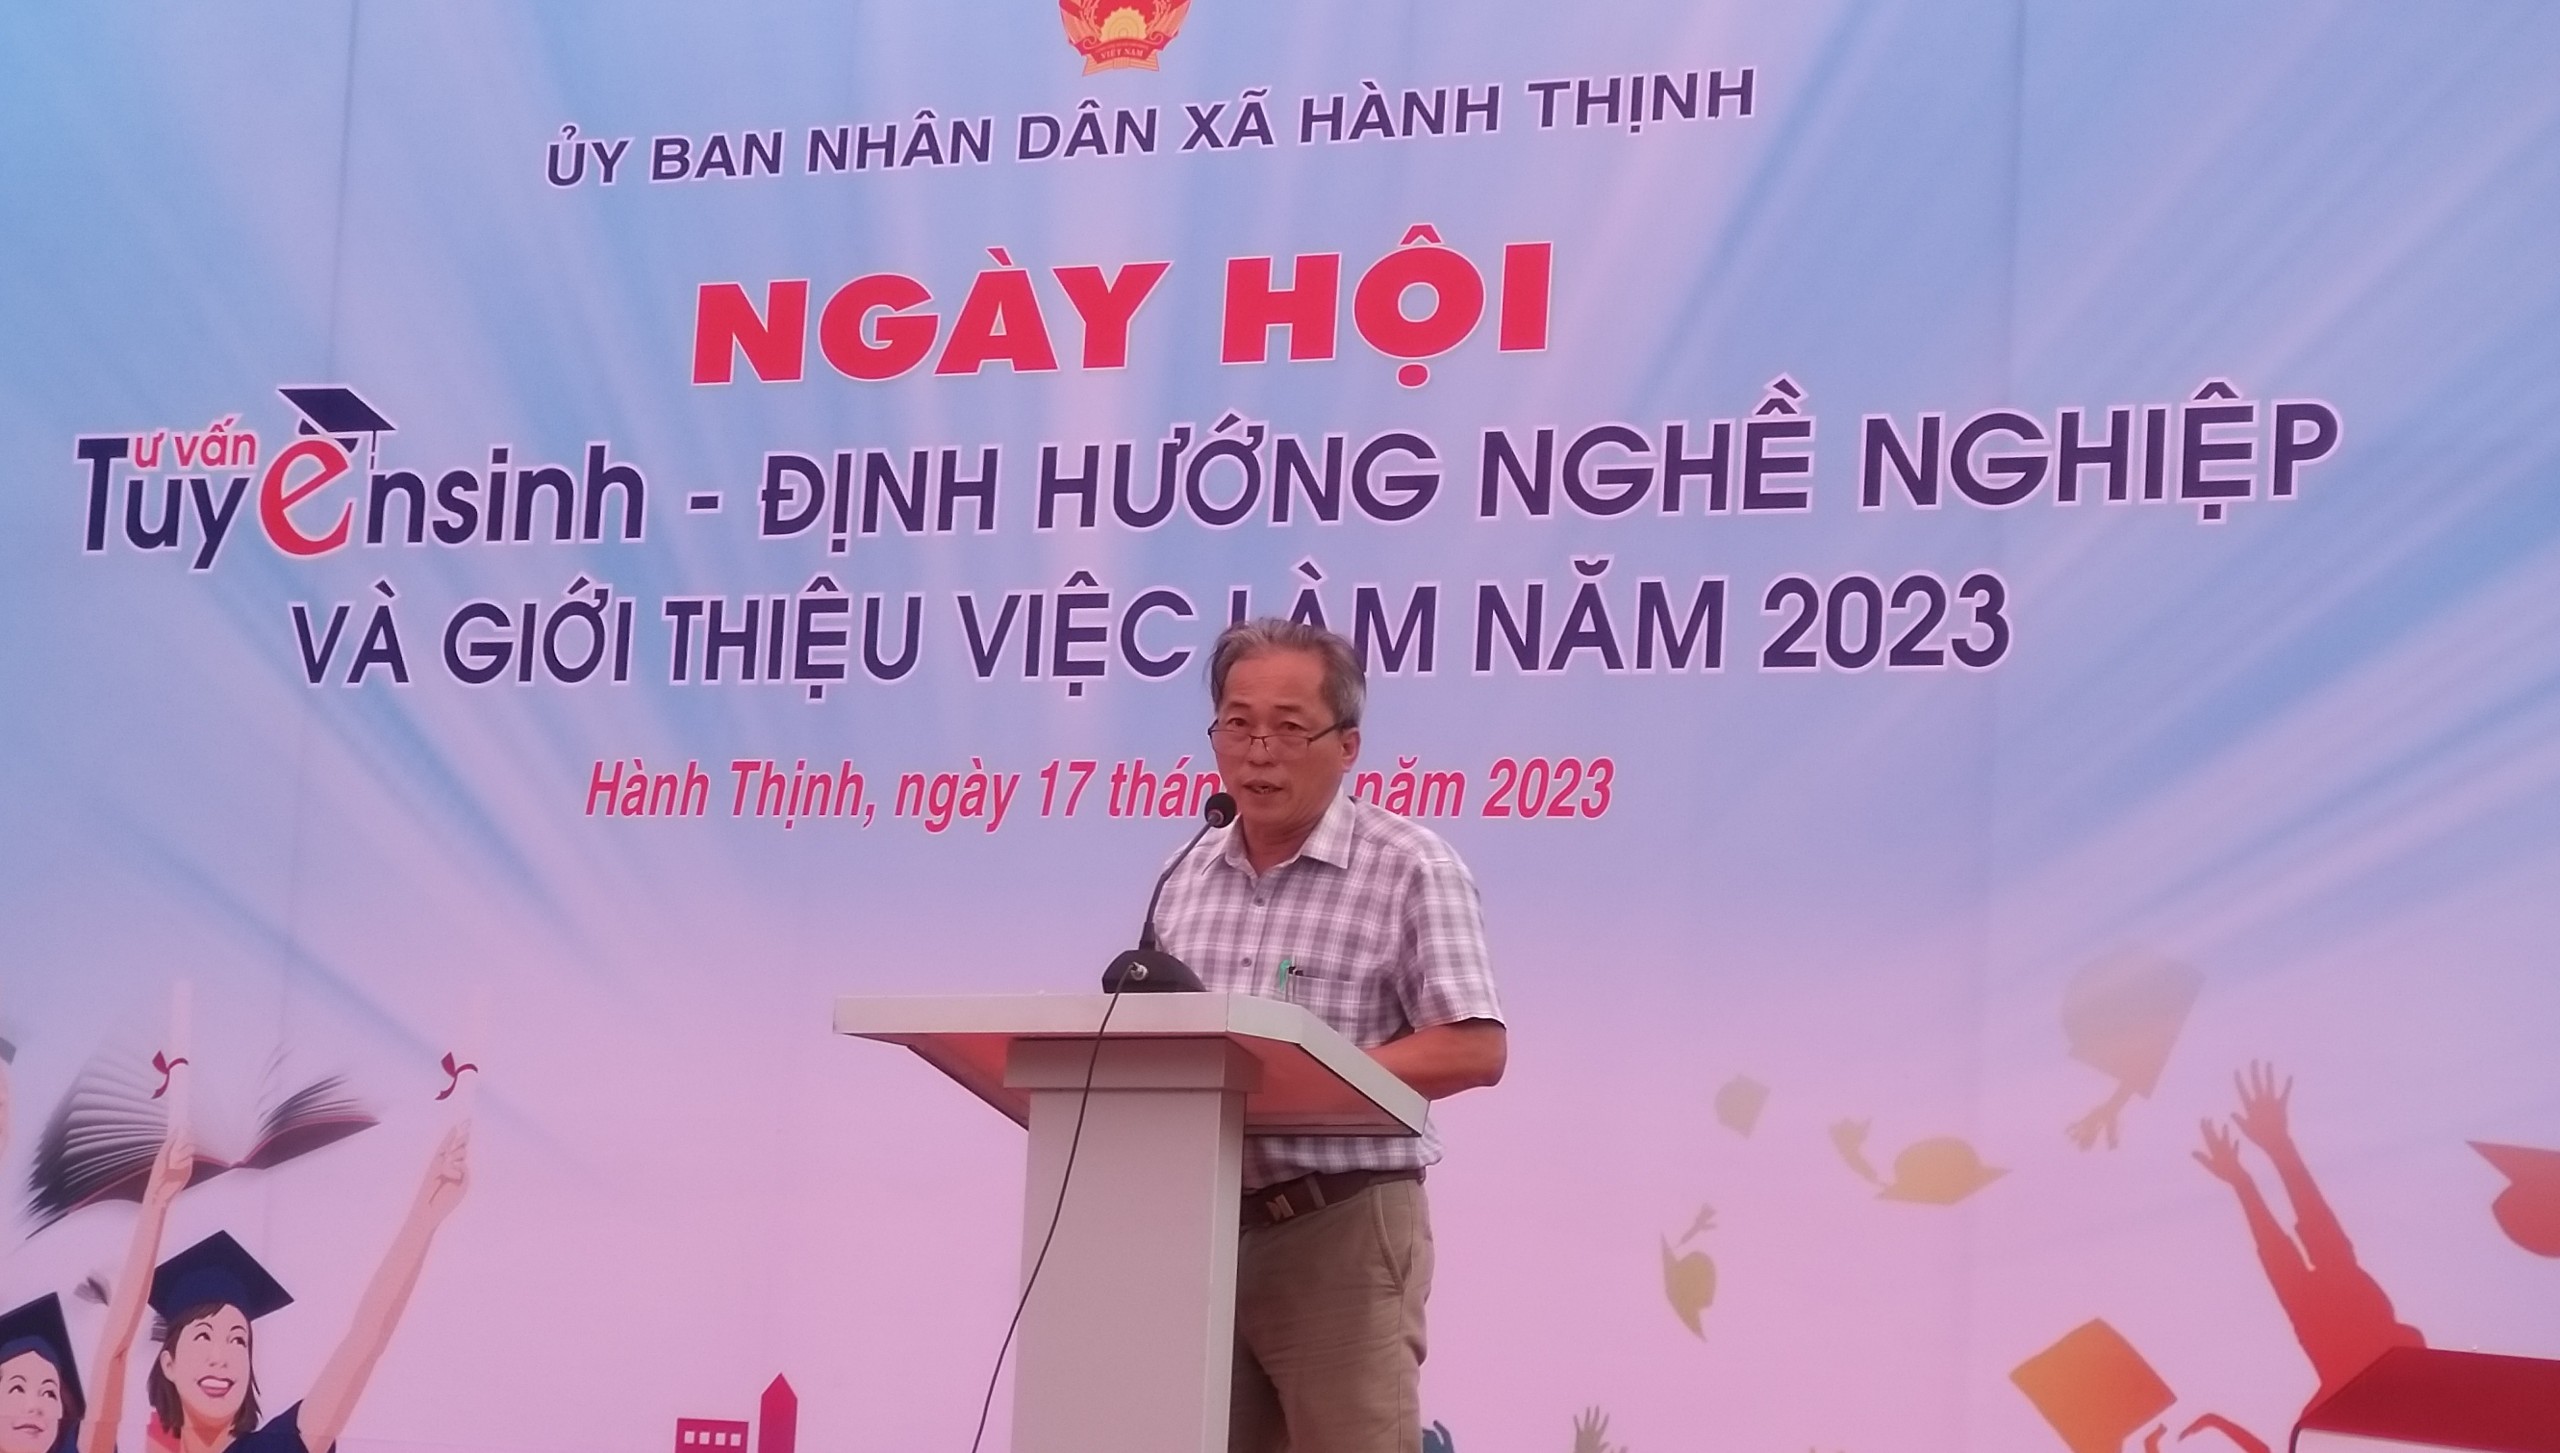 Đ/c Huỳnh Thanh Long - Chủ tịch UBND xã Hành Thịnh phát biểu Khai mạc Ngày Hội